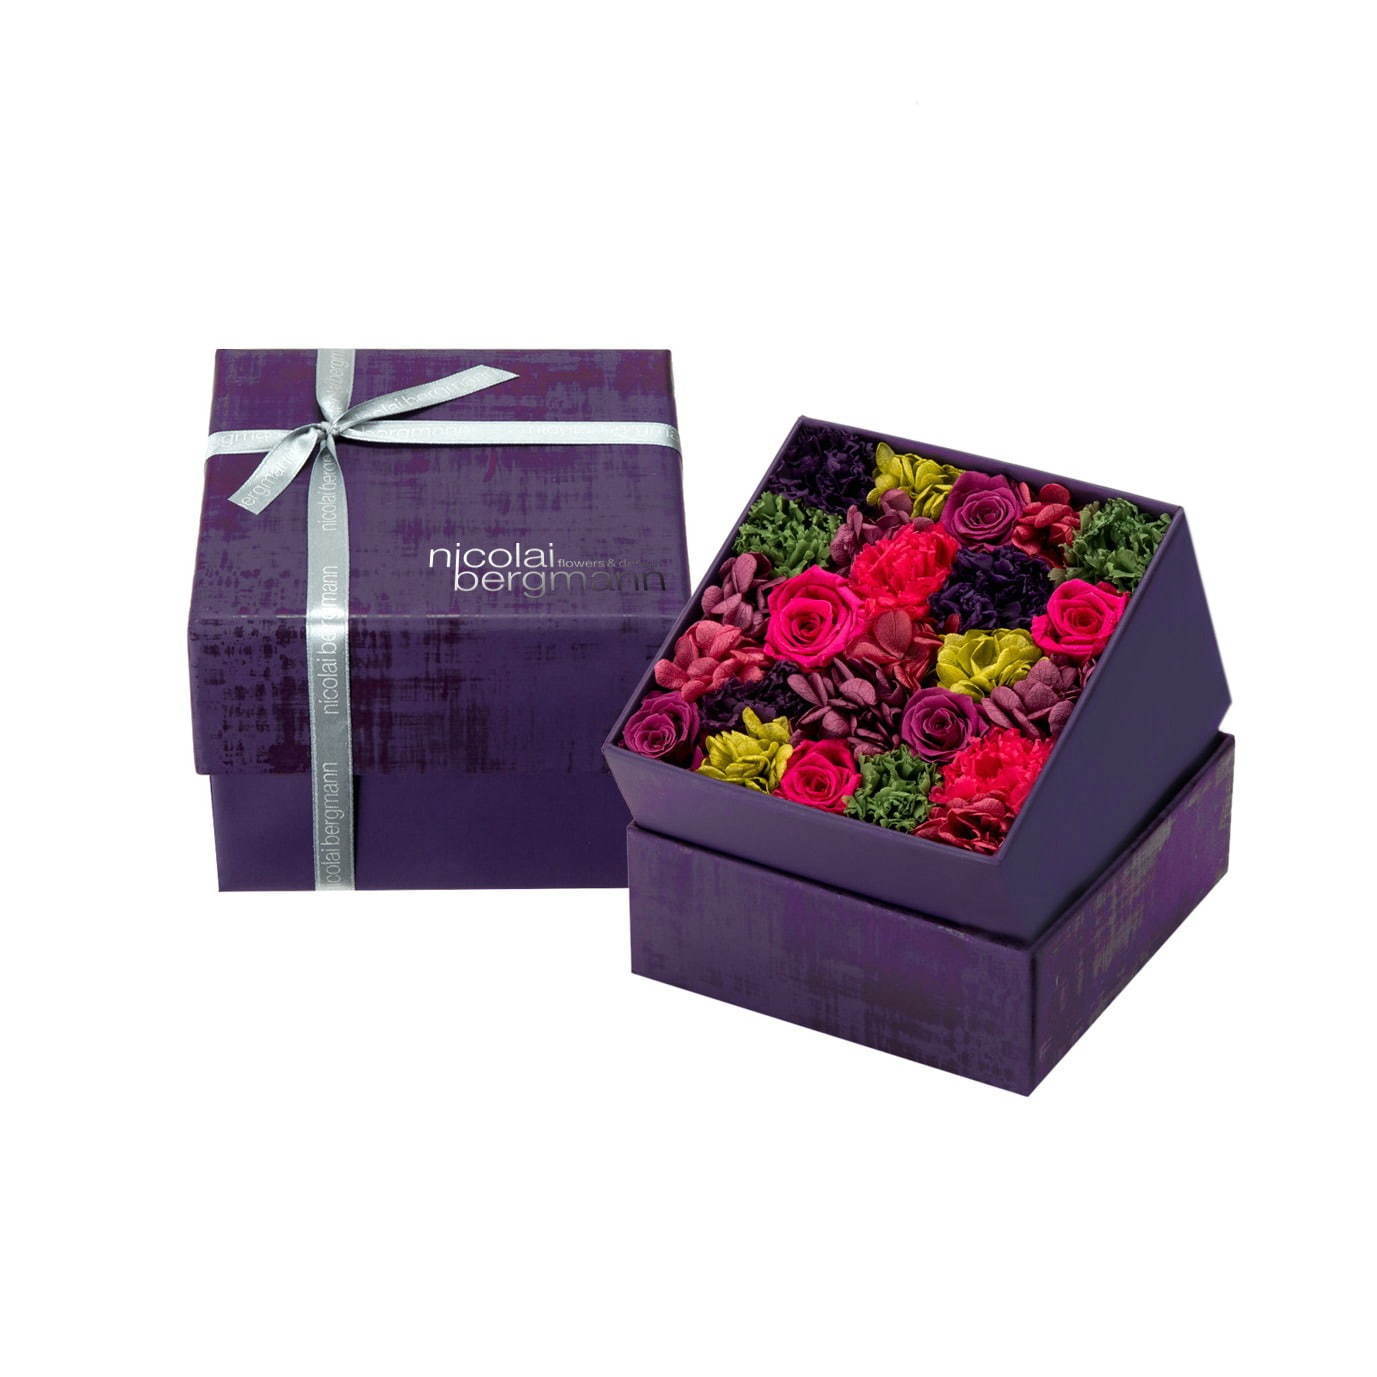 ニコライ バーグマンの秋限定フラワーボックス 紫の花やヒメリンゴで 実りの秋 を表現 ファッションプレス